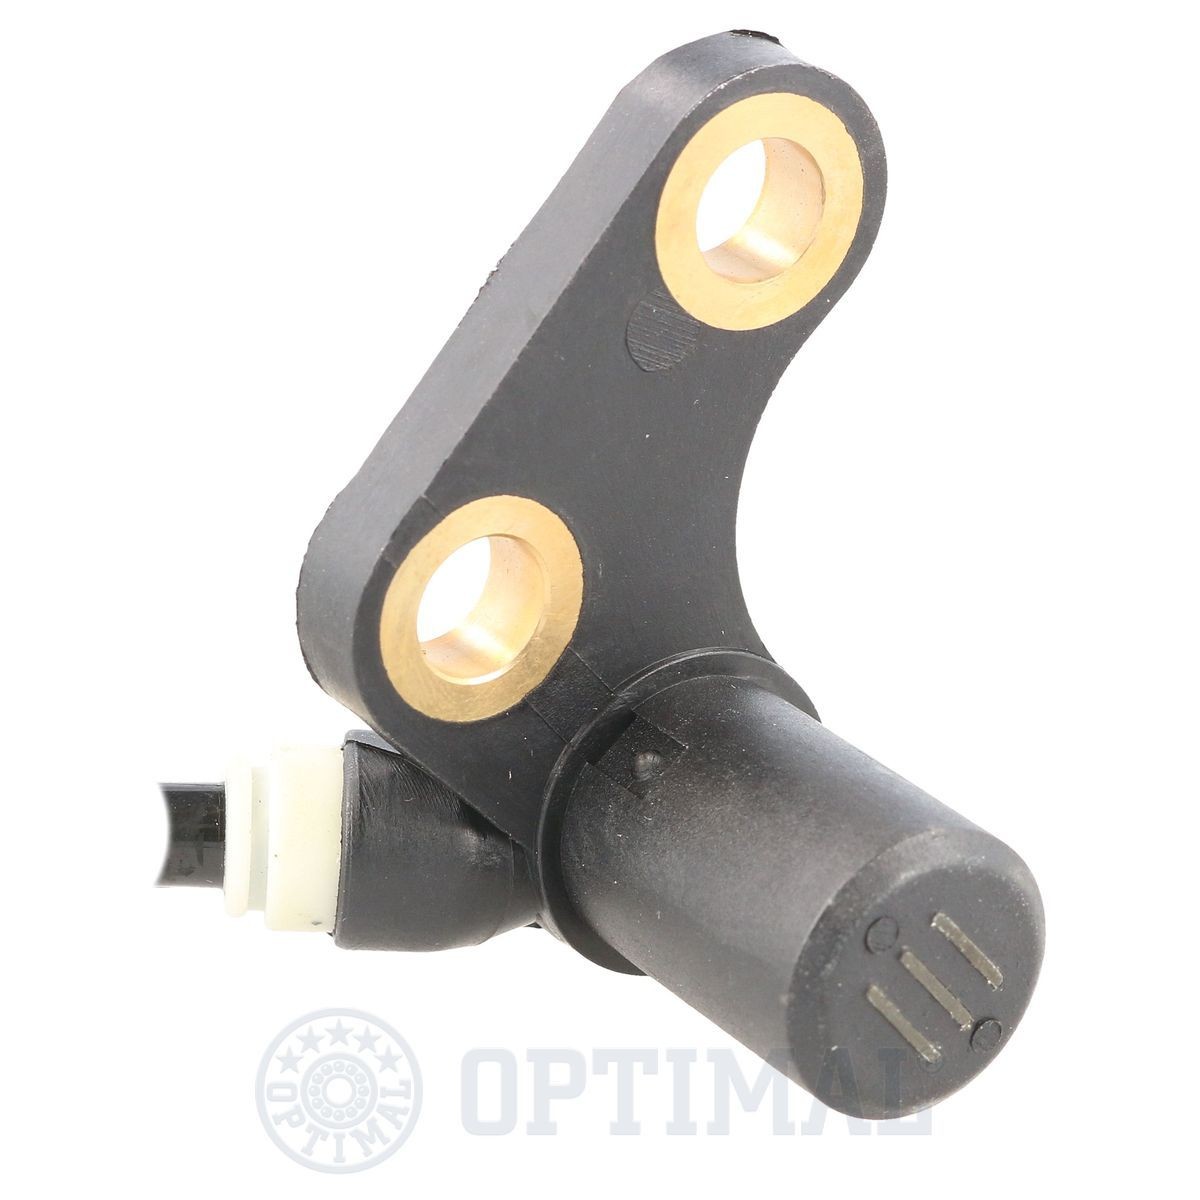 06S261 Anti lock brake sensor OPTIMAL 06-S261 review and test